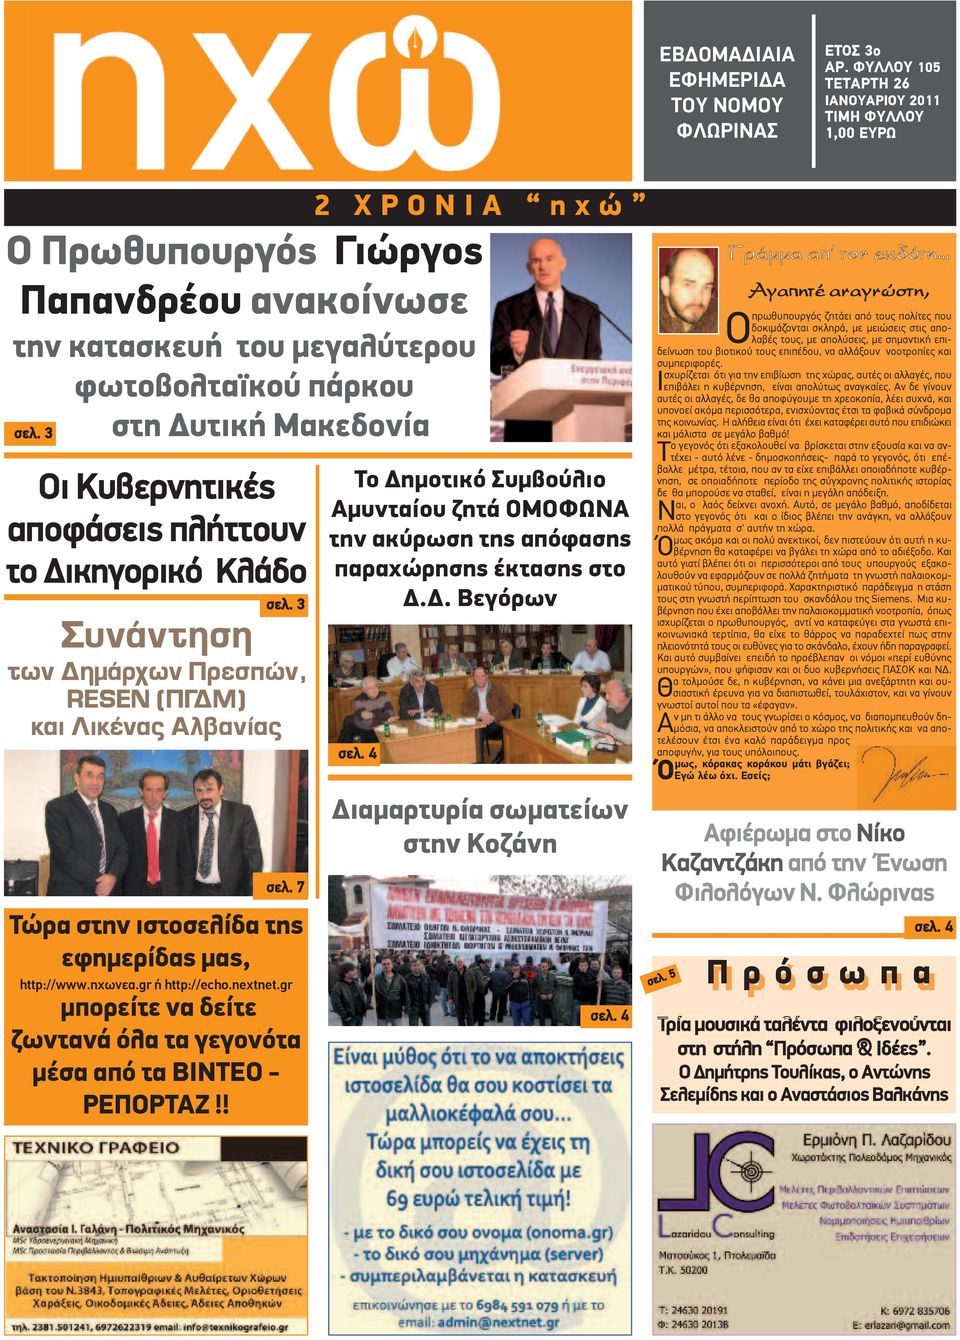 ώ Ο Πρωθυπουργός Γιώργος Παπανδρέου ανακοίνωσε την κατασκευή του μεγαλύτερου φωτοβολταϊκού πάρκου σελ. 3 στη Δυτική Μακεδονία σελ. 3 σελ. 7 Τώρα στην ιστοσελίδα της εφημερίδας μας, http://www.ηχωνεα.